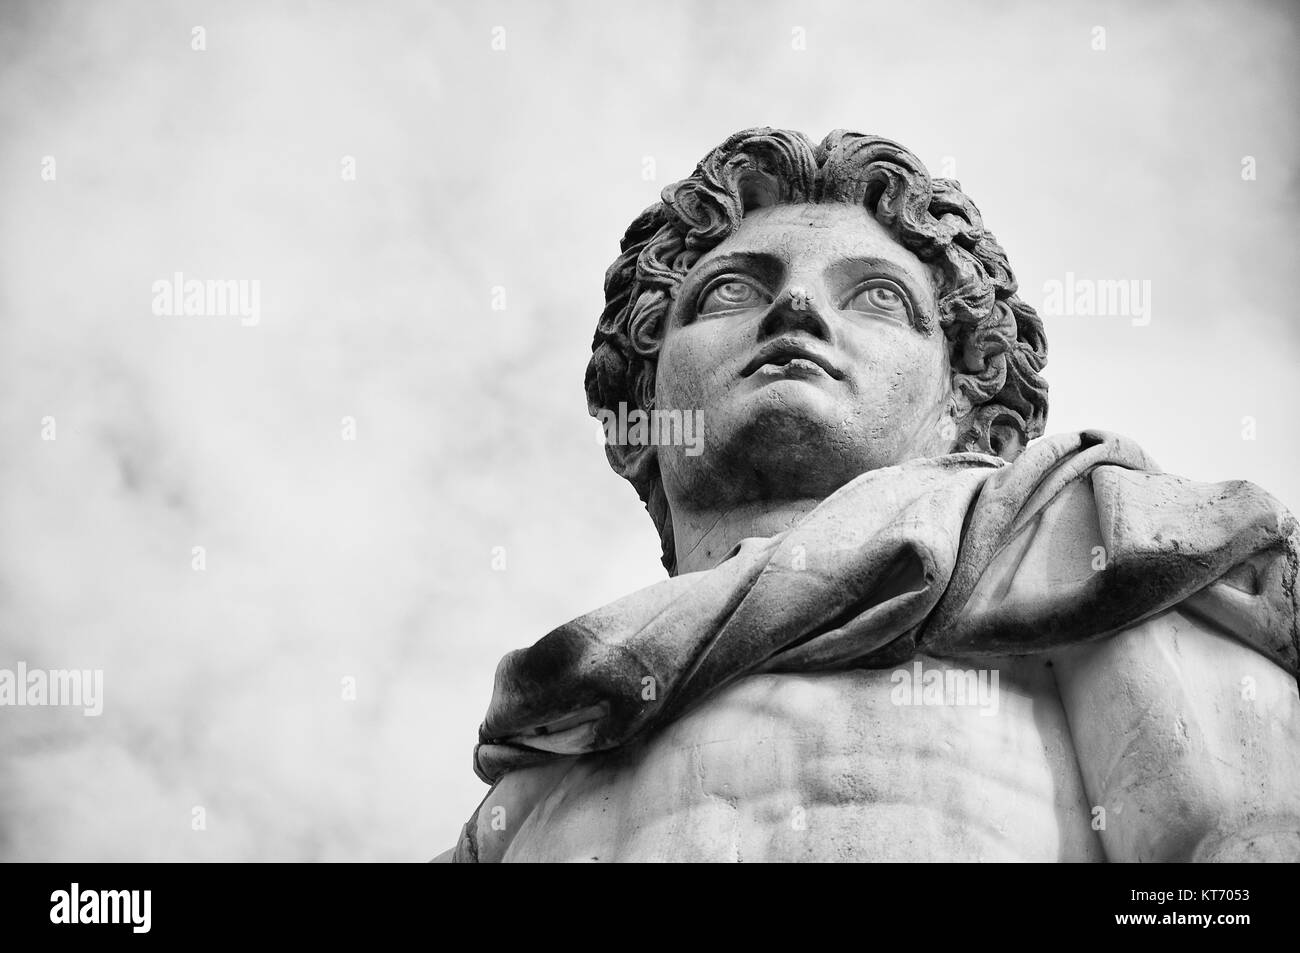 One of the statues of dioscuri in Campidoglio square, Rome. Stock Photo